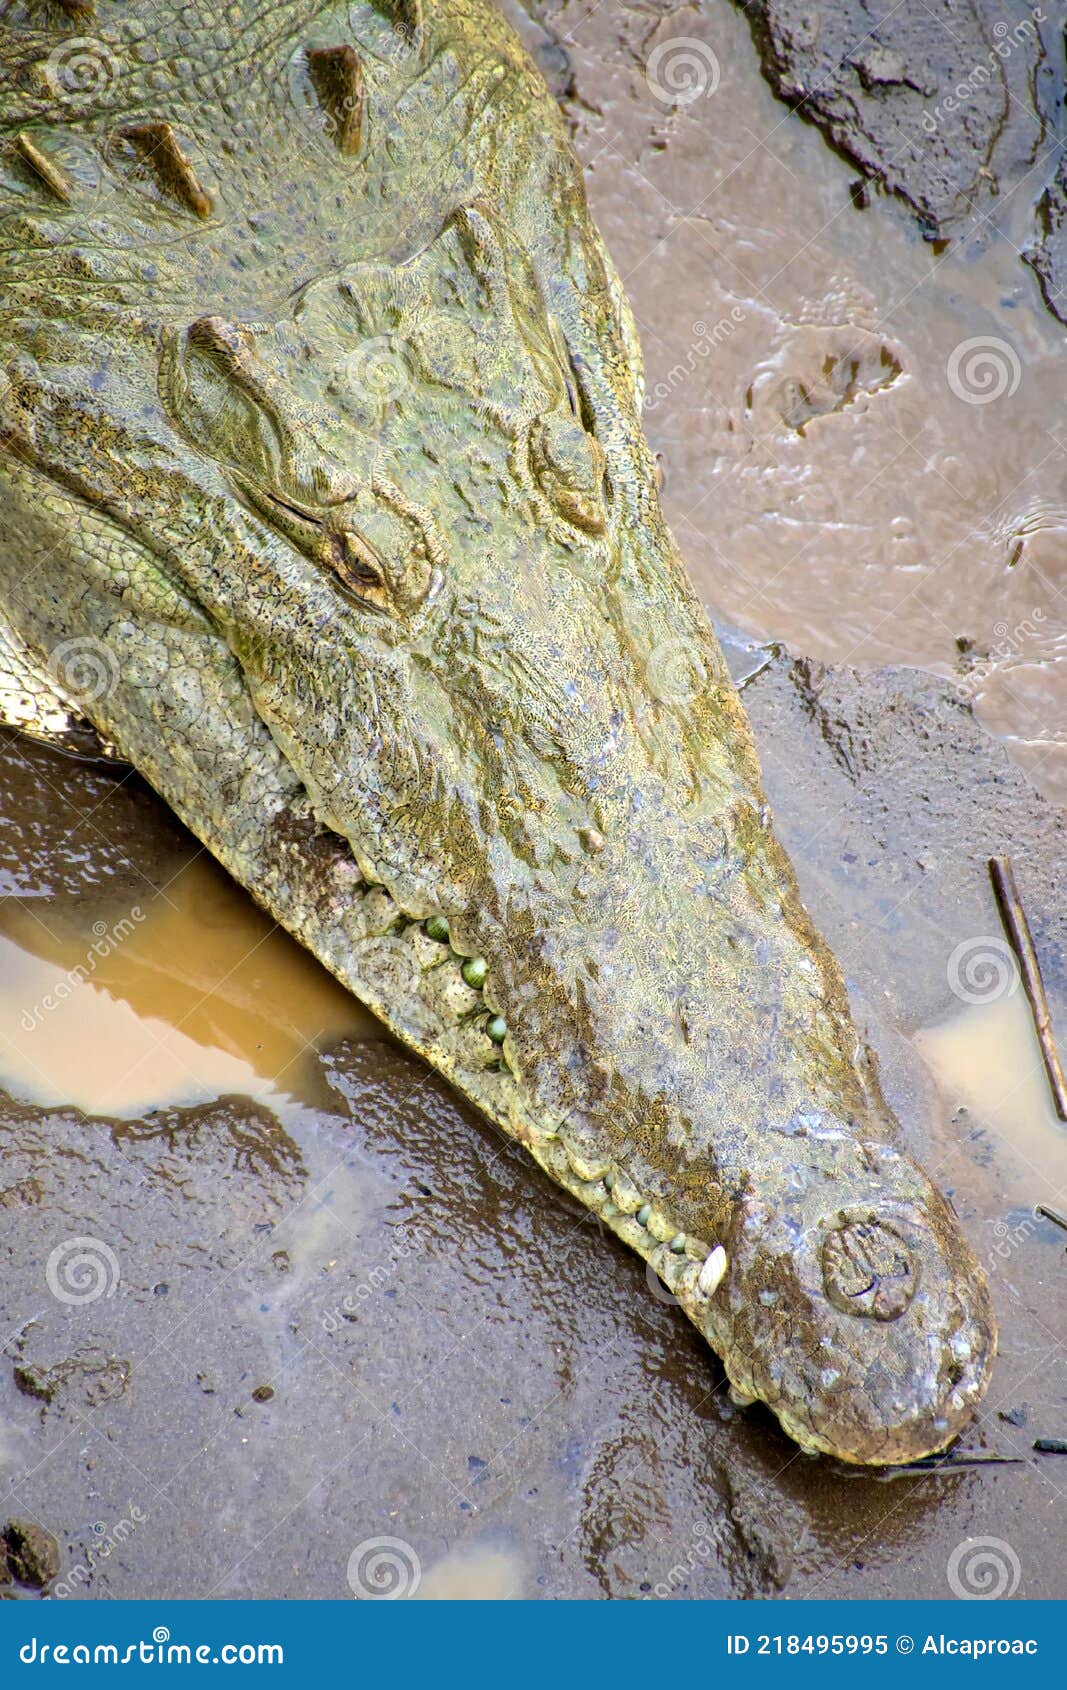 american crocodile, boca tapada, costa rica, america